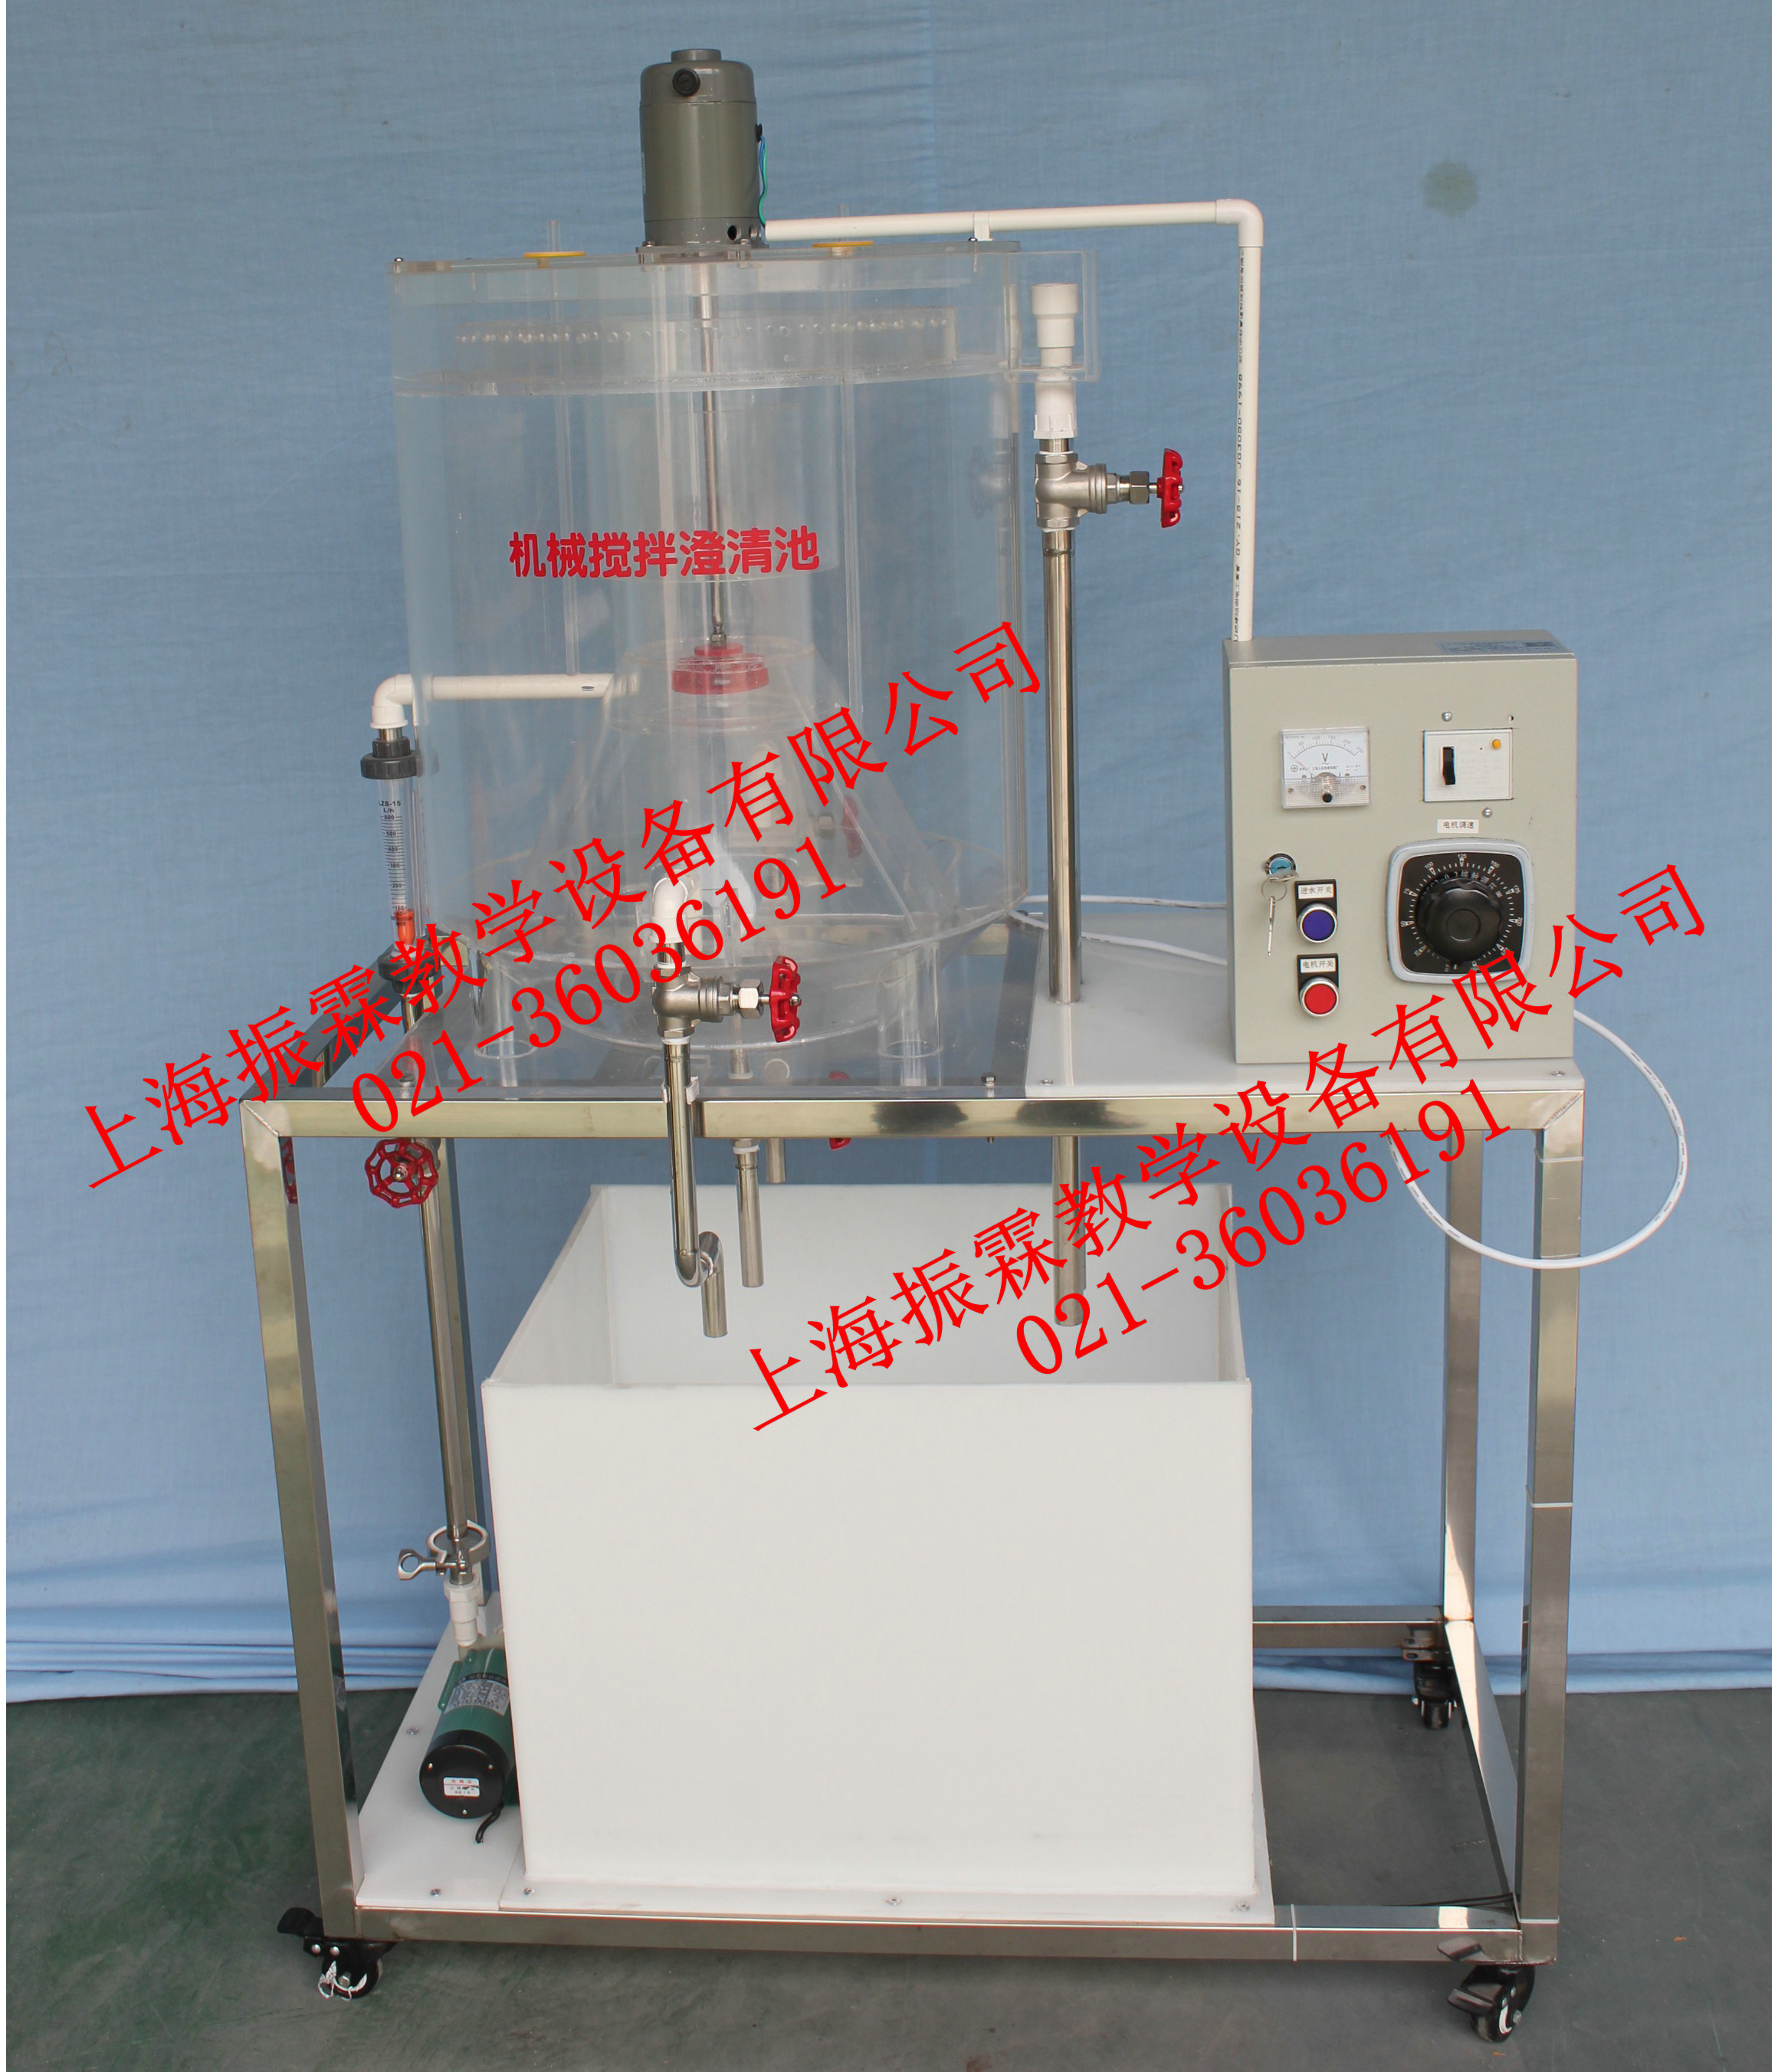 机械加速澄清池装置-水质处理实验设备--上海振霖公司